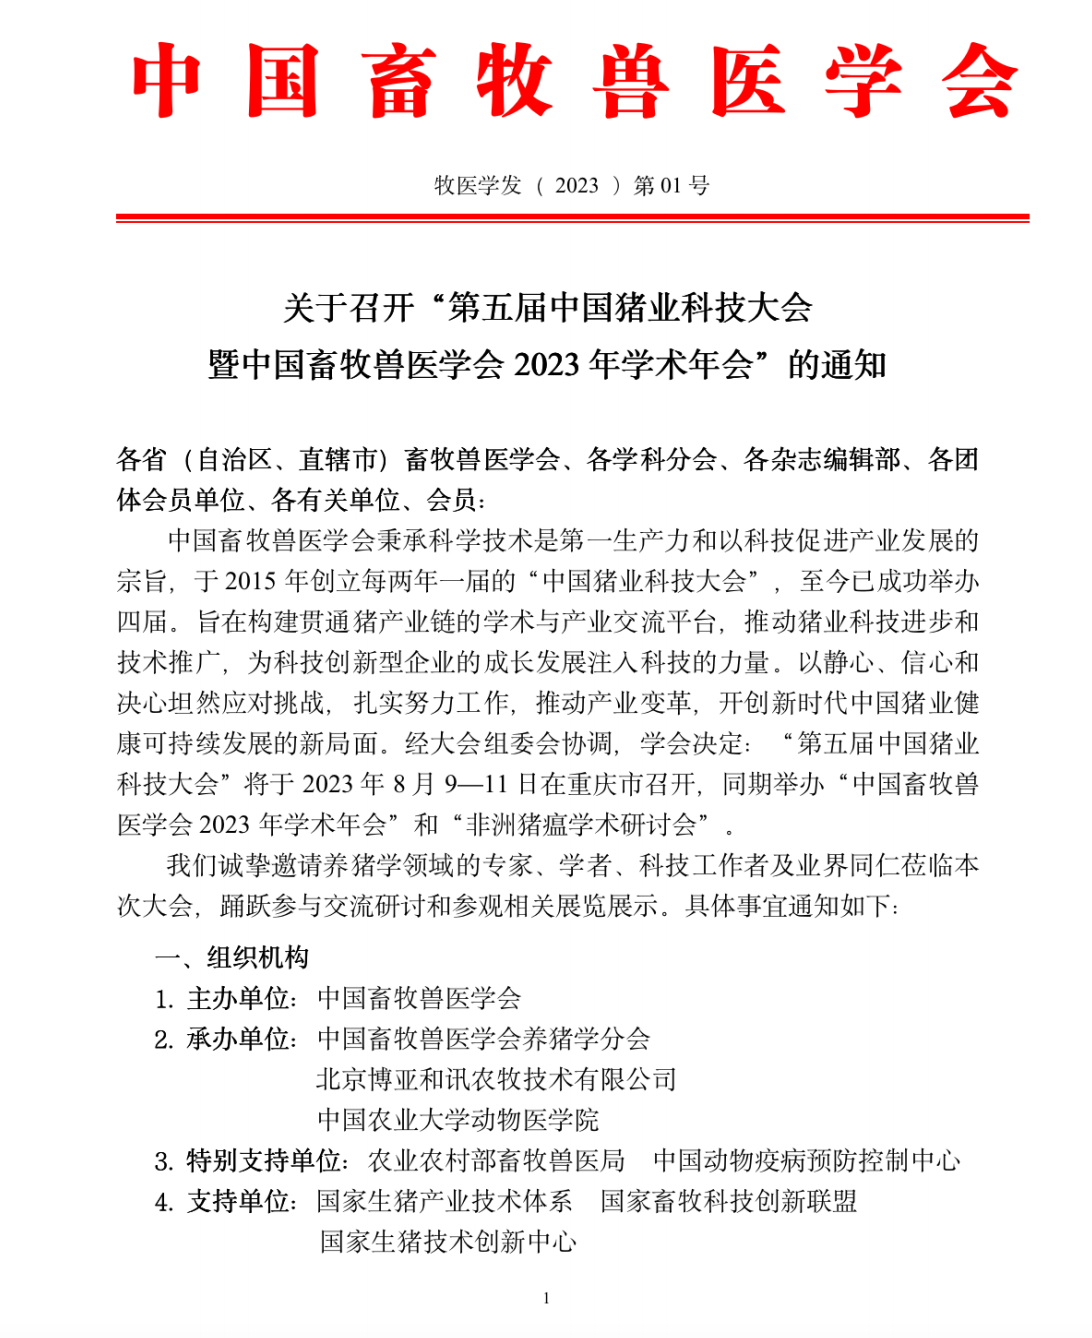 关于召开“第五届中国猪业科技大会暨中国畜牧兽医学会2023年学术年会”的通知